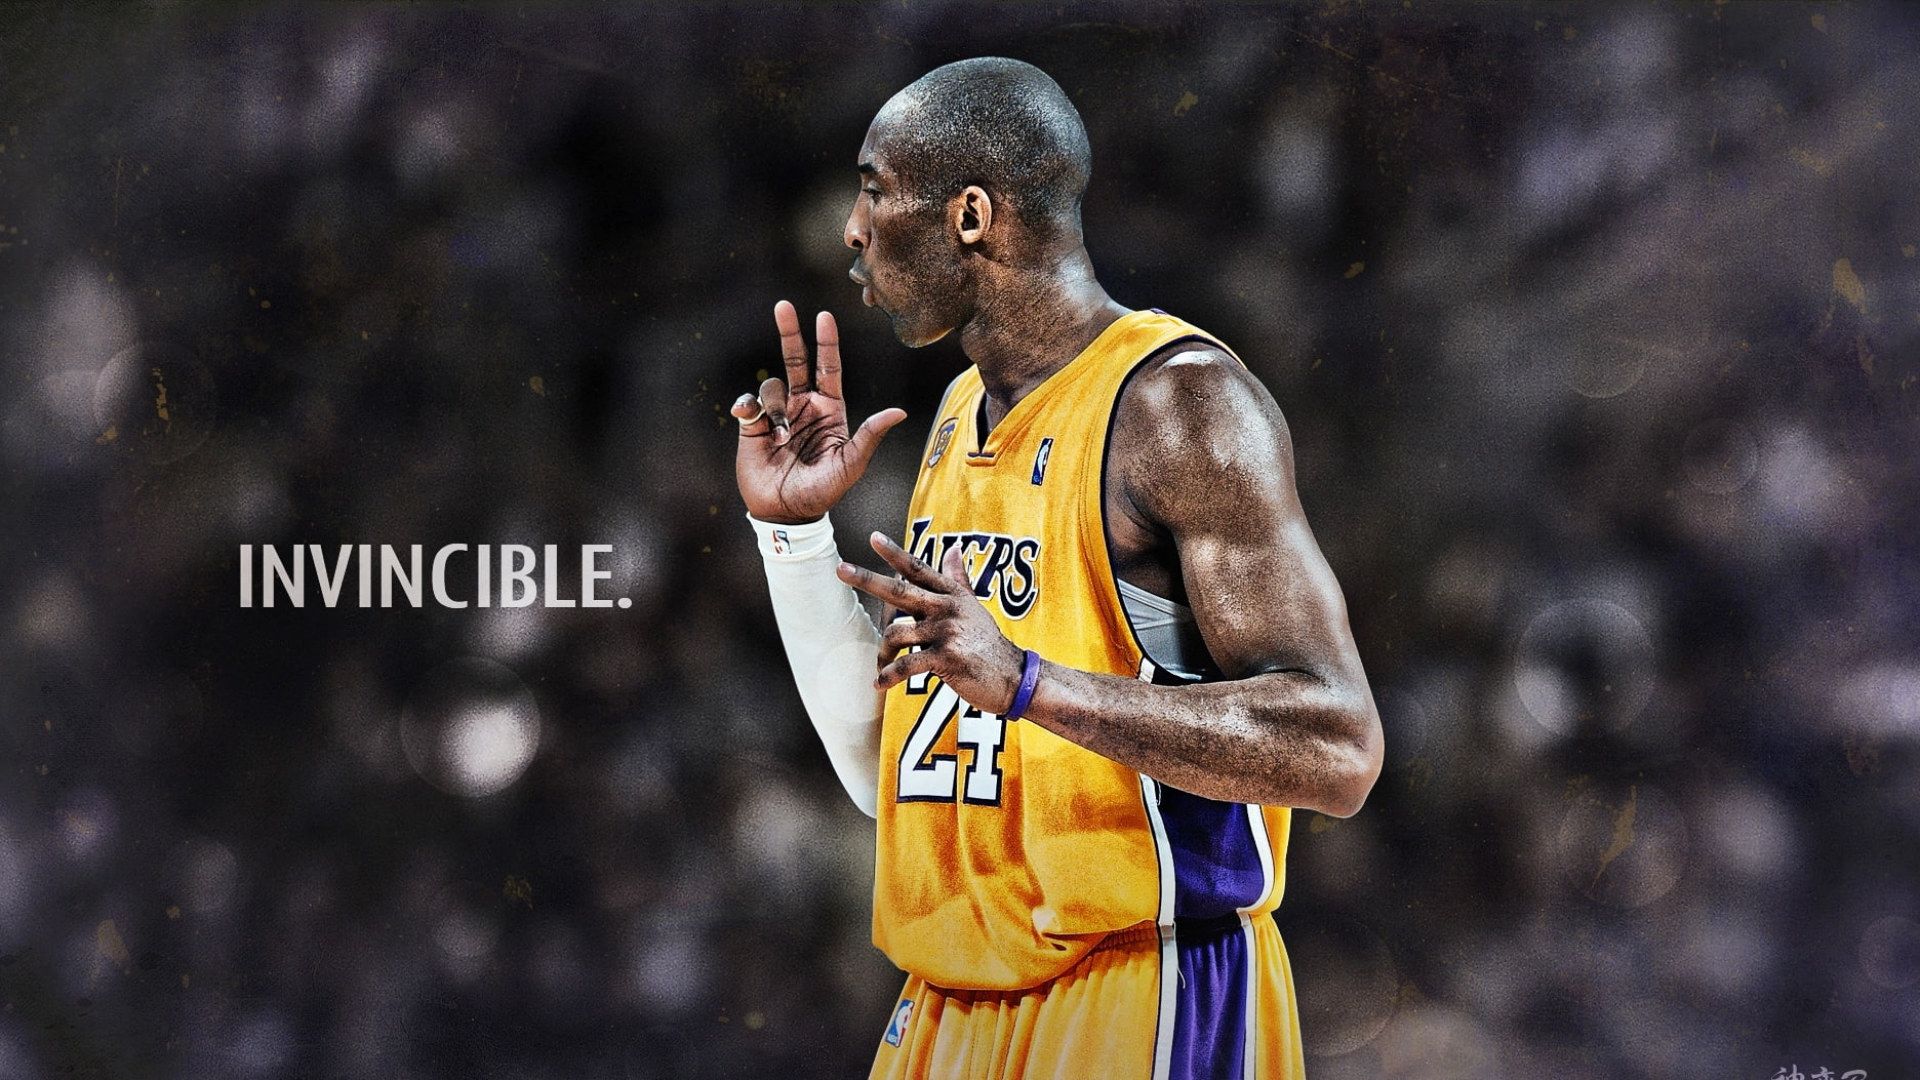 Kobe Bryant Invincible HD Wallpaper .wallpaperforu.com